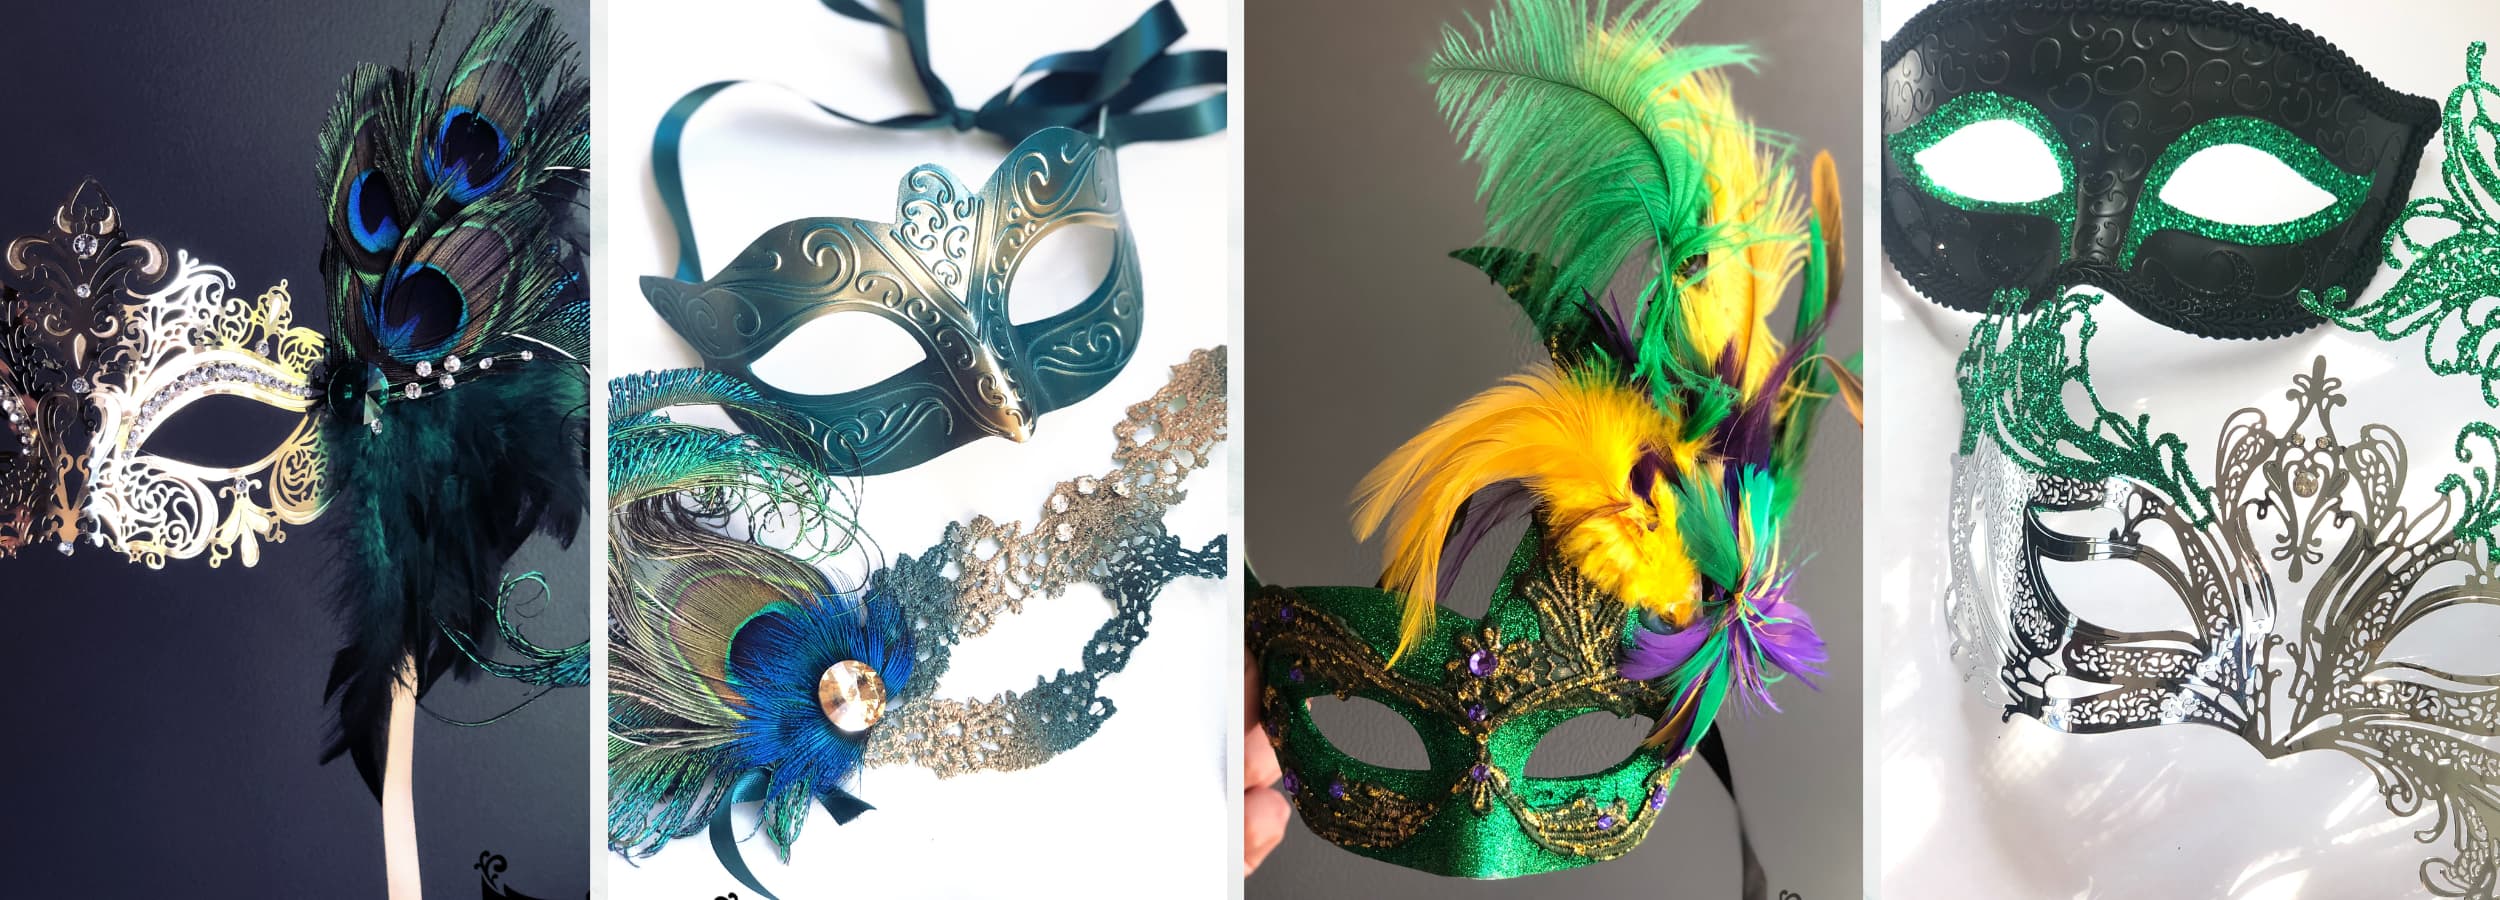 Green Masquerade Masks